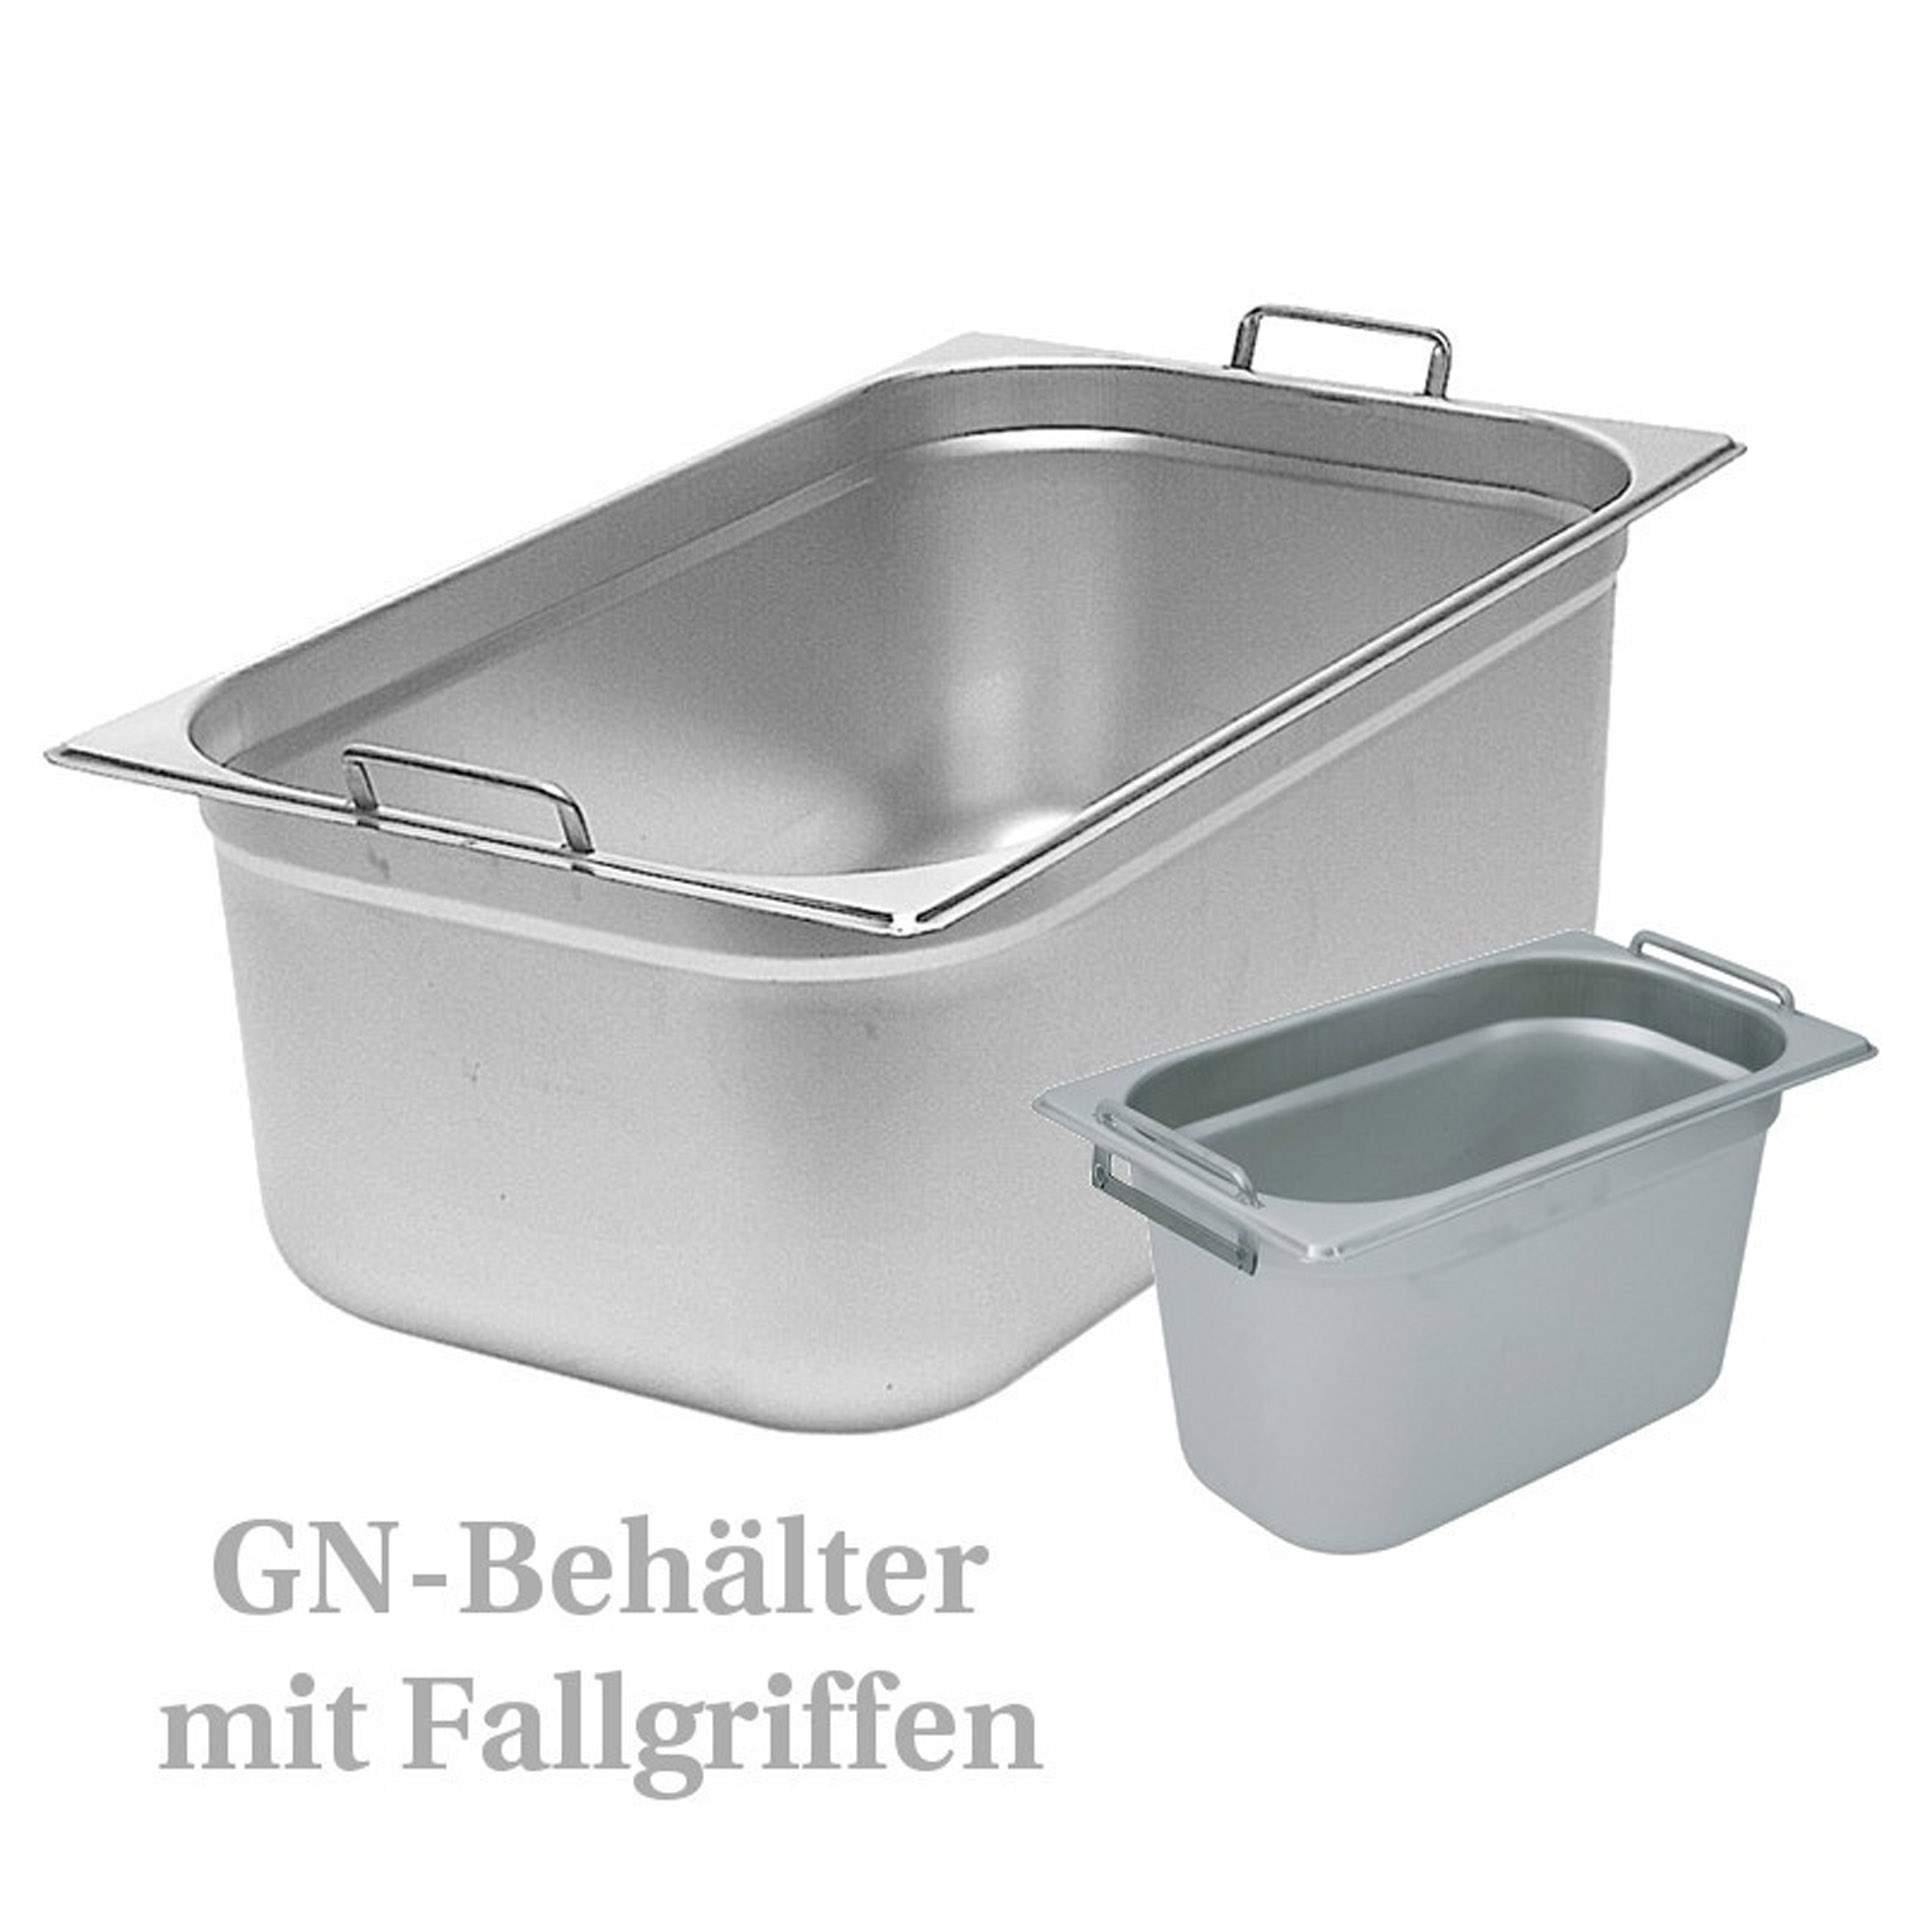 GN-Behälter - mit Fallgriffen - GN 1/2 - 100 mm - Inhalt 6,5 l - Serie 73 - Chromnickelstahl - 7312100-A